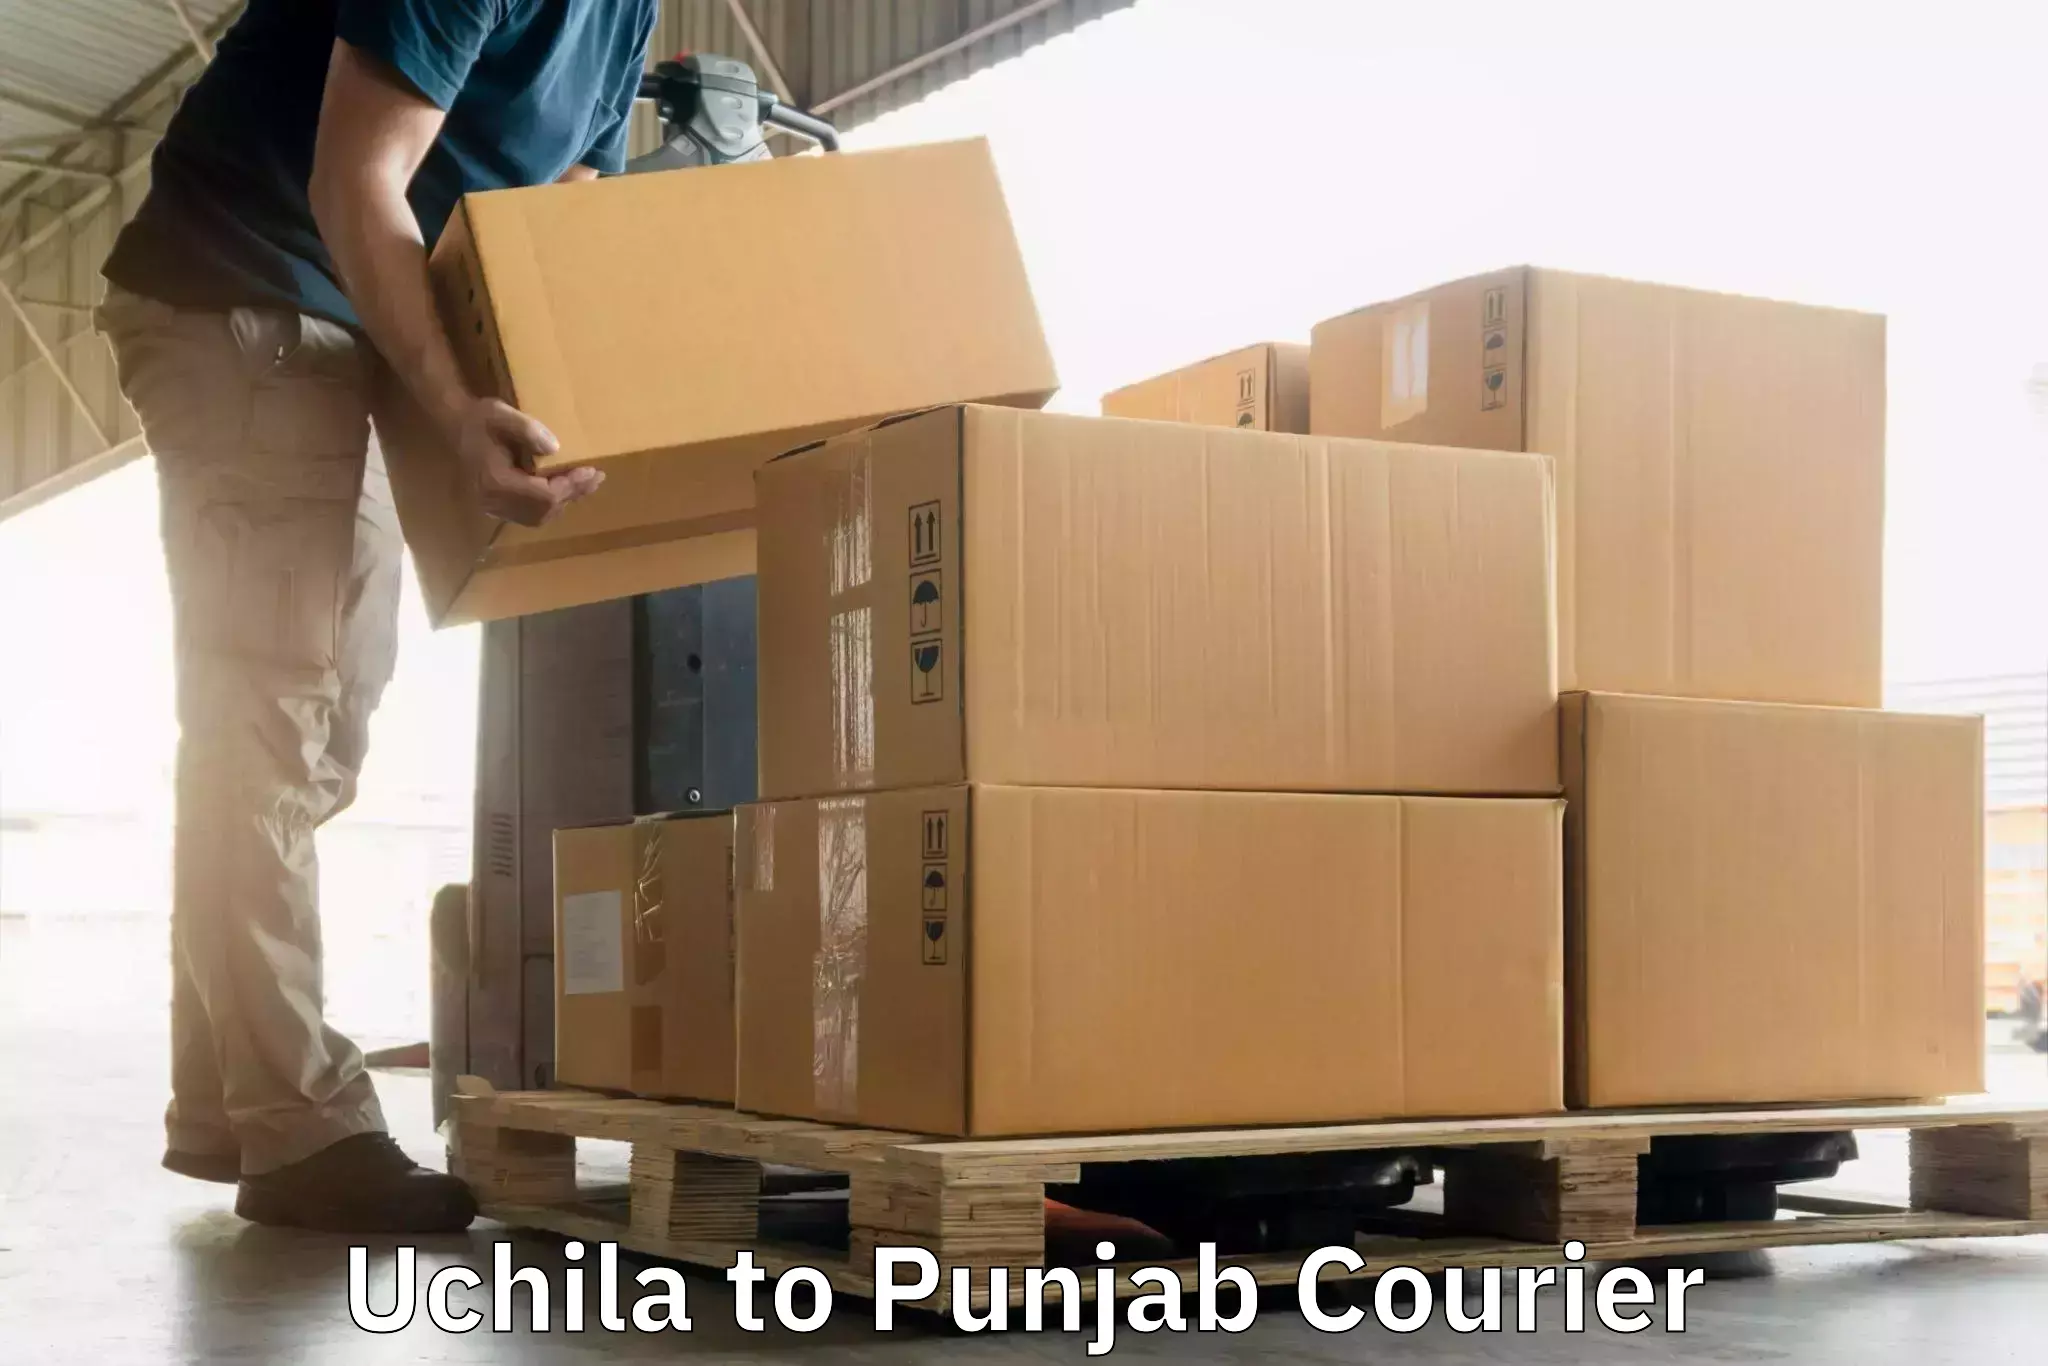 24-hour courier service Uchila to Dasuya